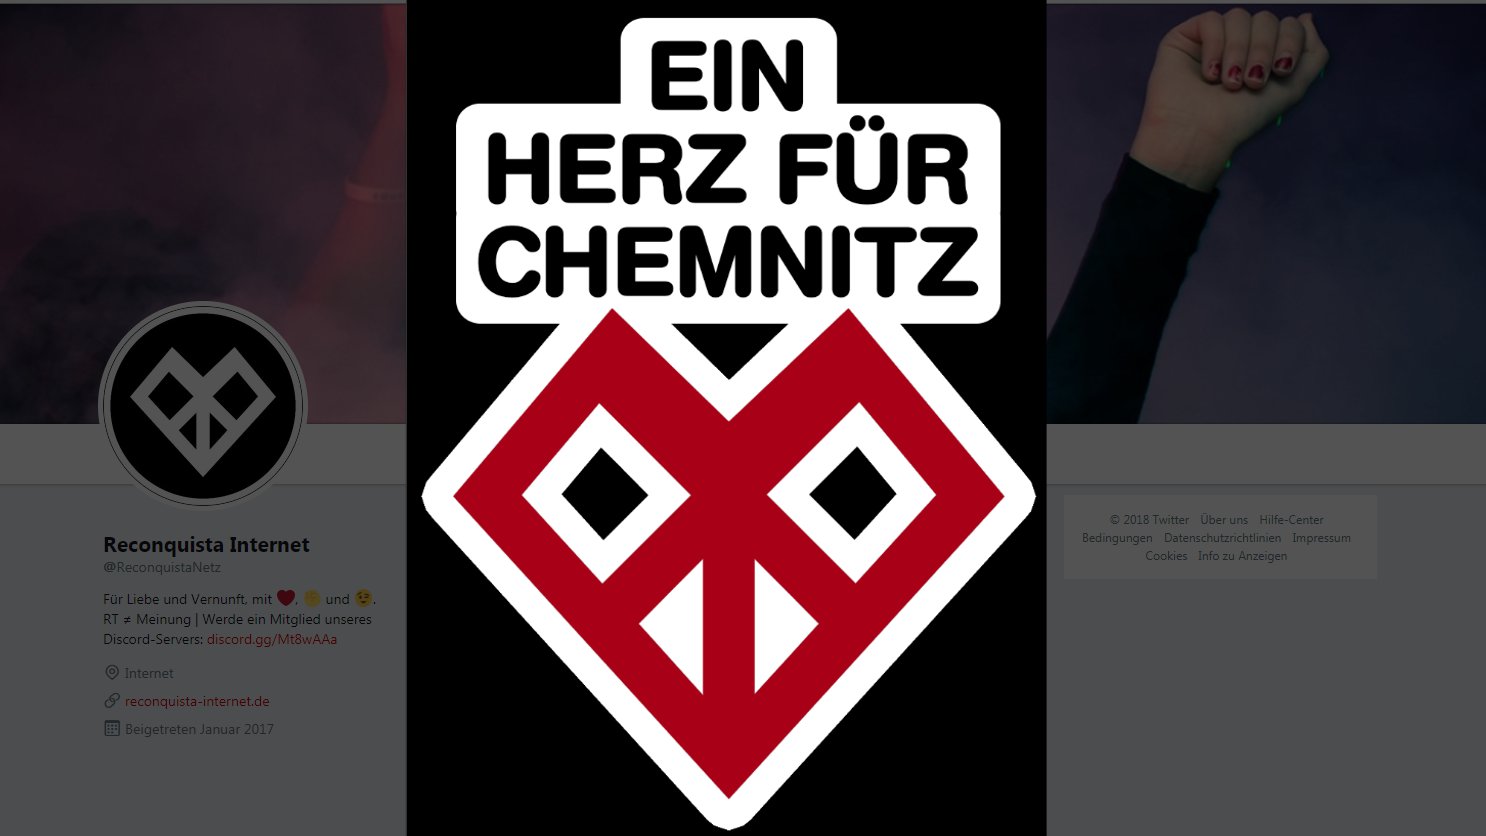 Hashtag-Aktion nach Nazi-Aufmarsch: Ein Herz für Chemnitz